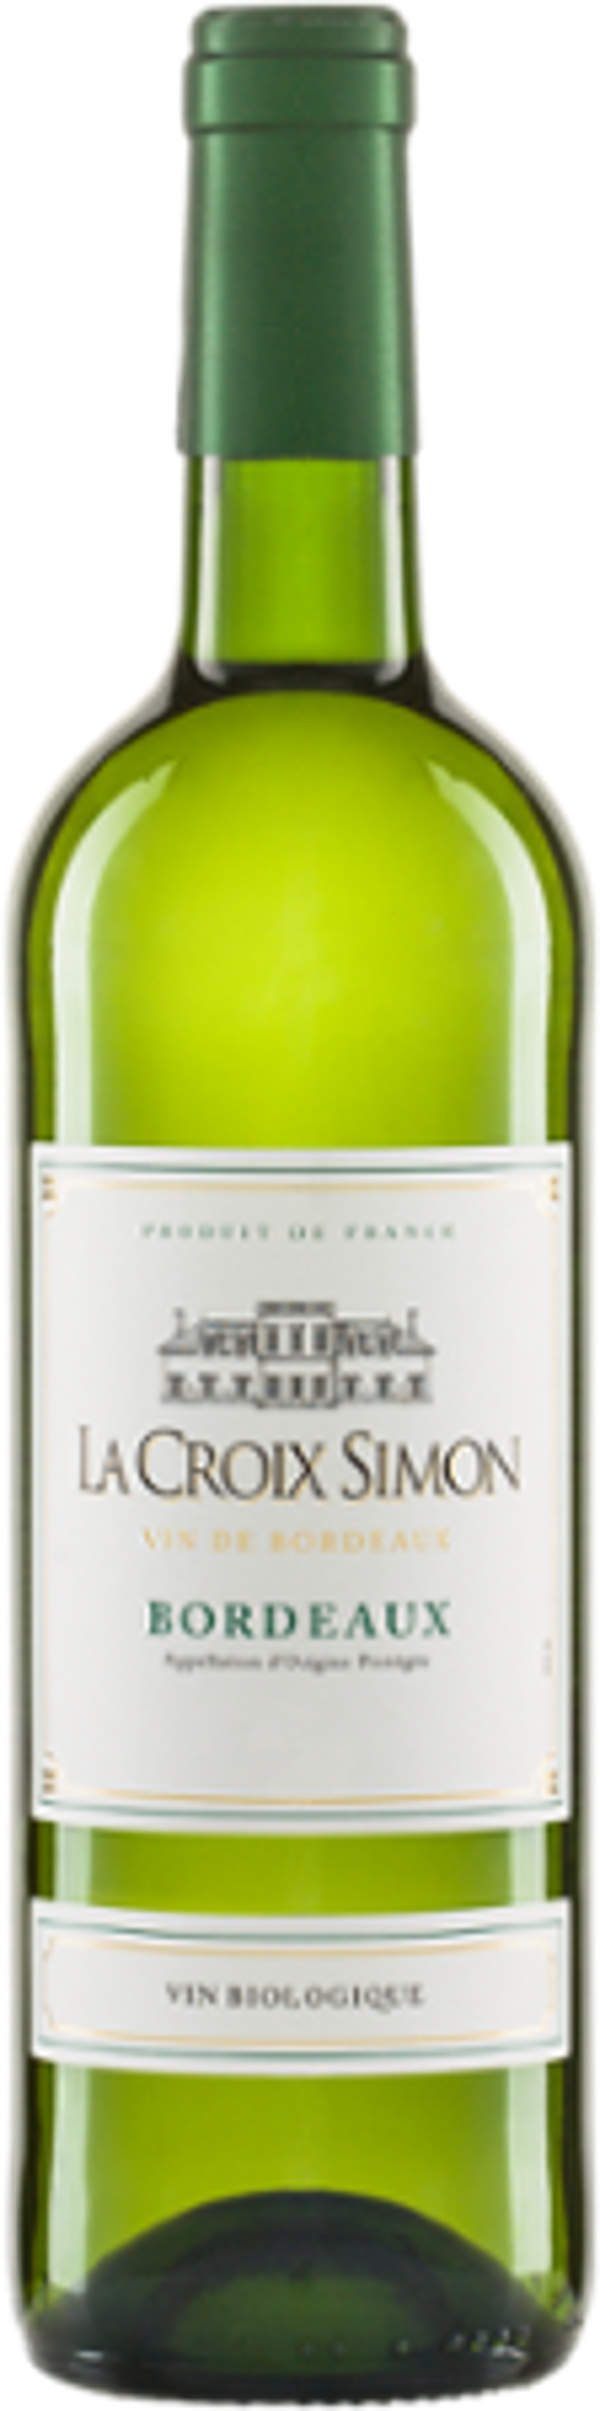 Produktfoto zu La Croix Simon Bordeaux Blanc